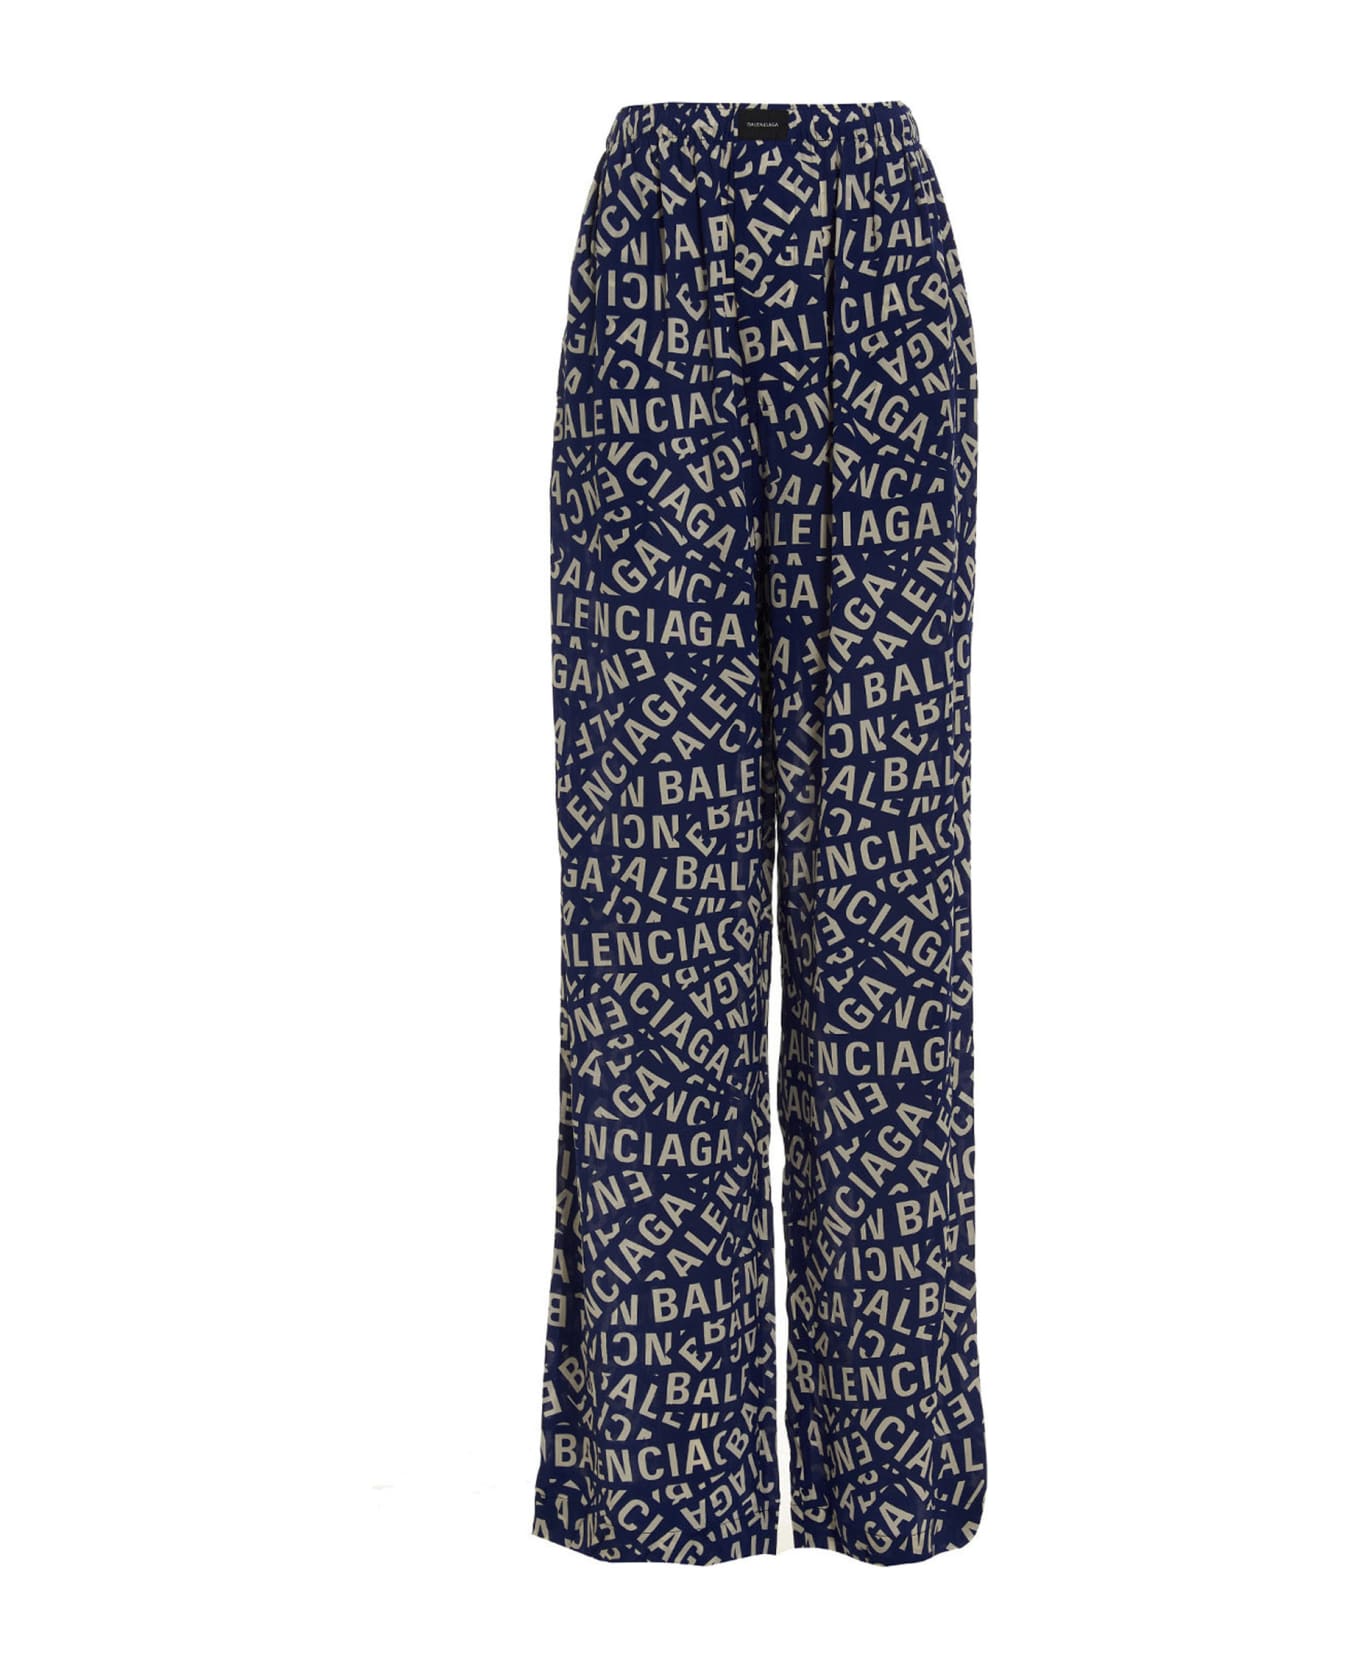 Balenciaga Printed Silk Pajama Pants - blue ボトムス